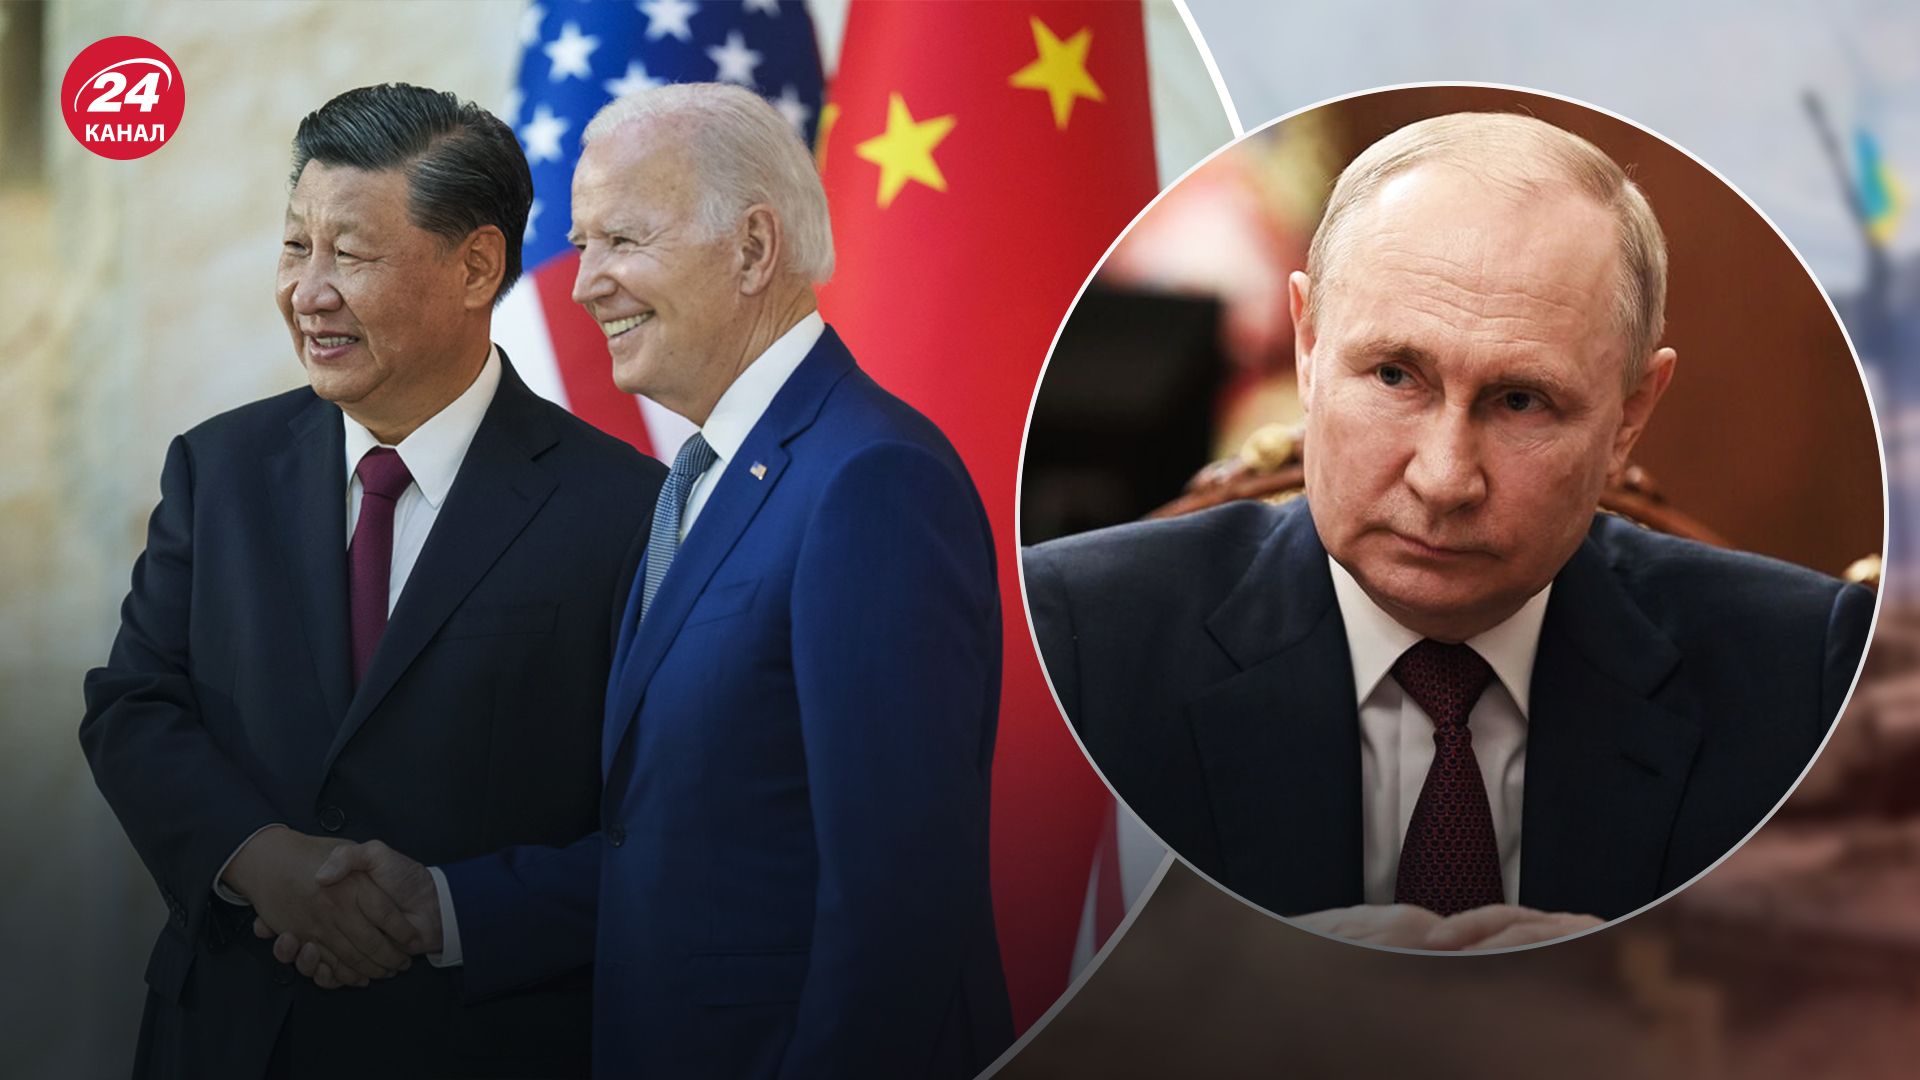 Встреча Джо Байдена и Си Цзиньпина - как ее последствия могут повлиять на Россию - 24 Канал